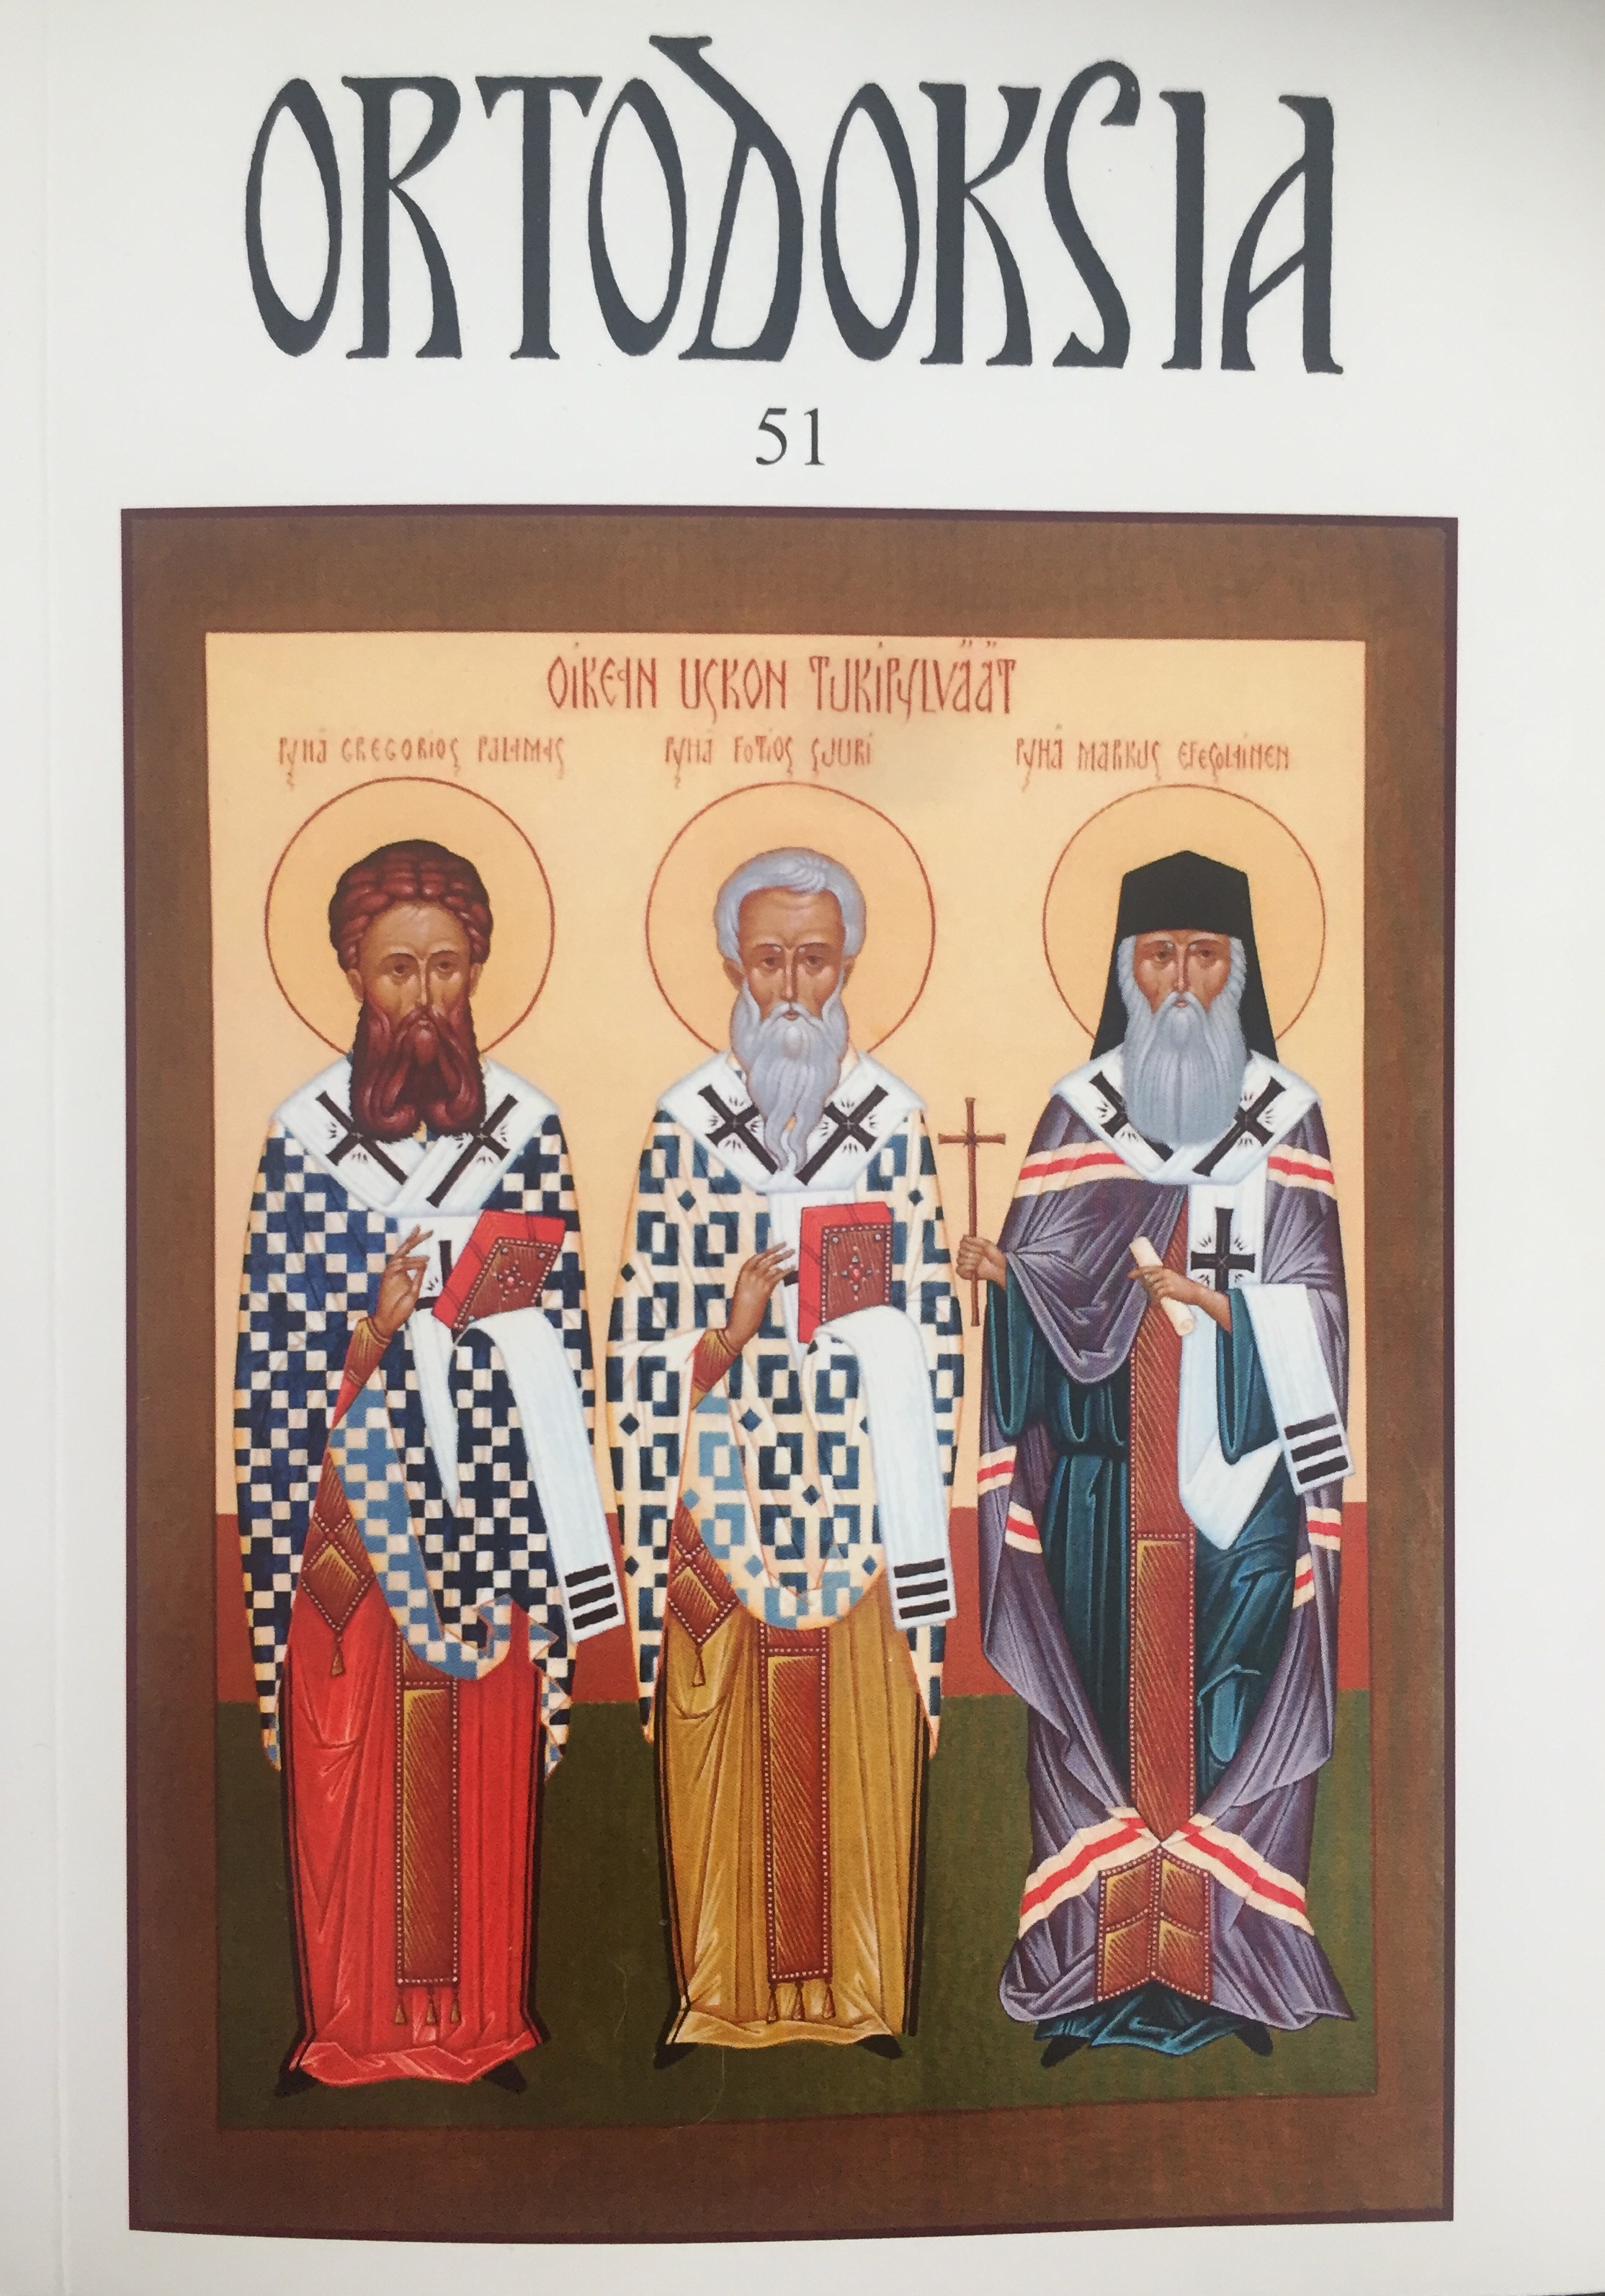 					Näytä Vol 51 (2010): Ortodoksia 51
				